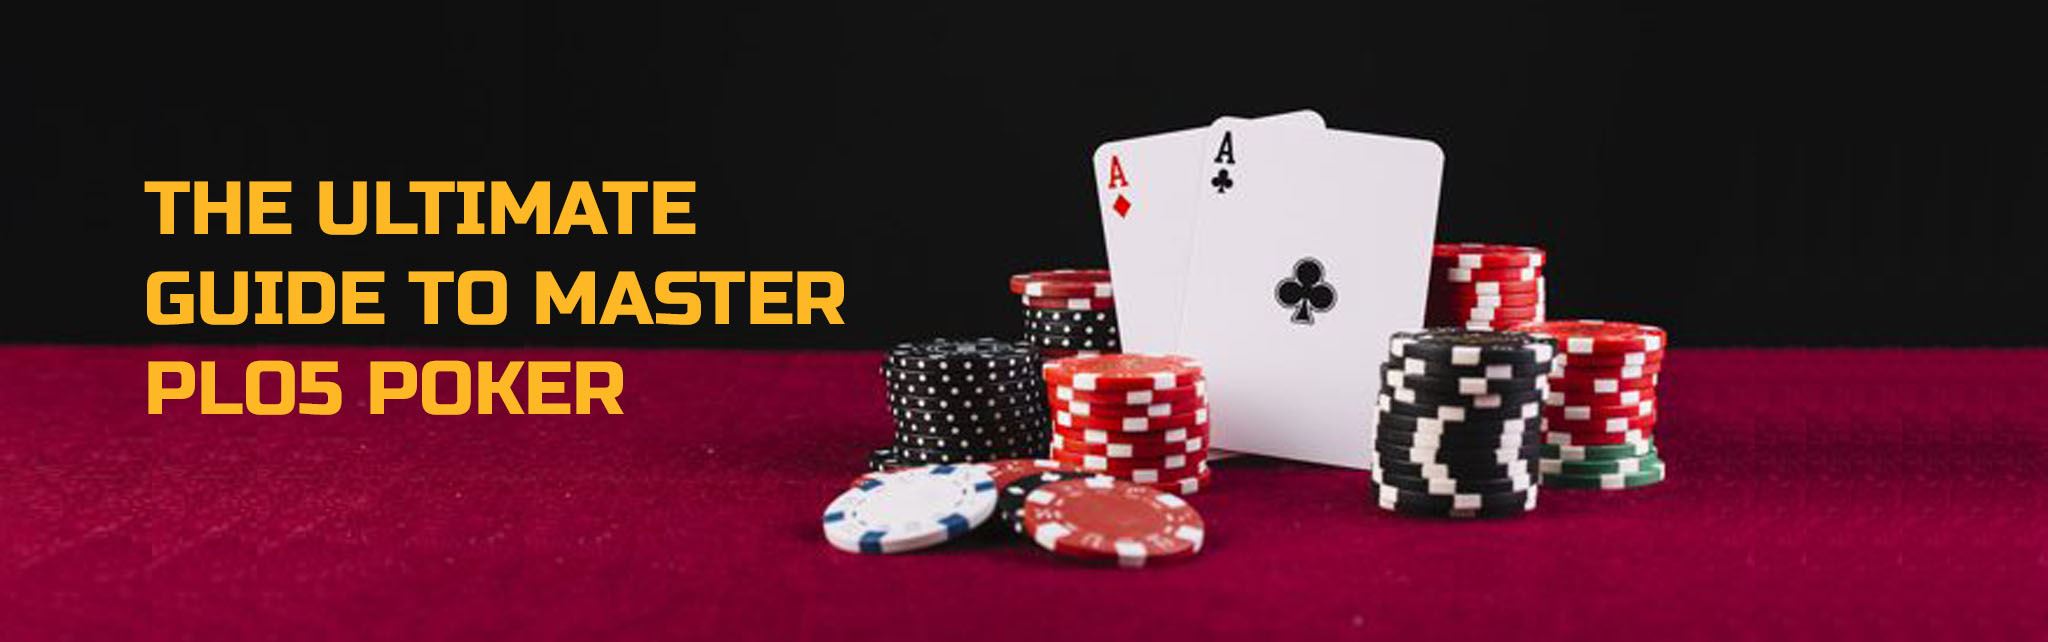 bot poker online